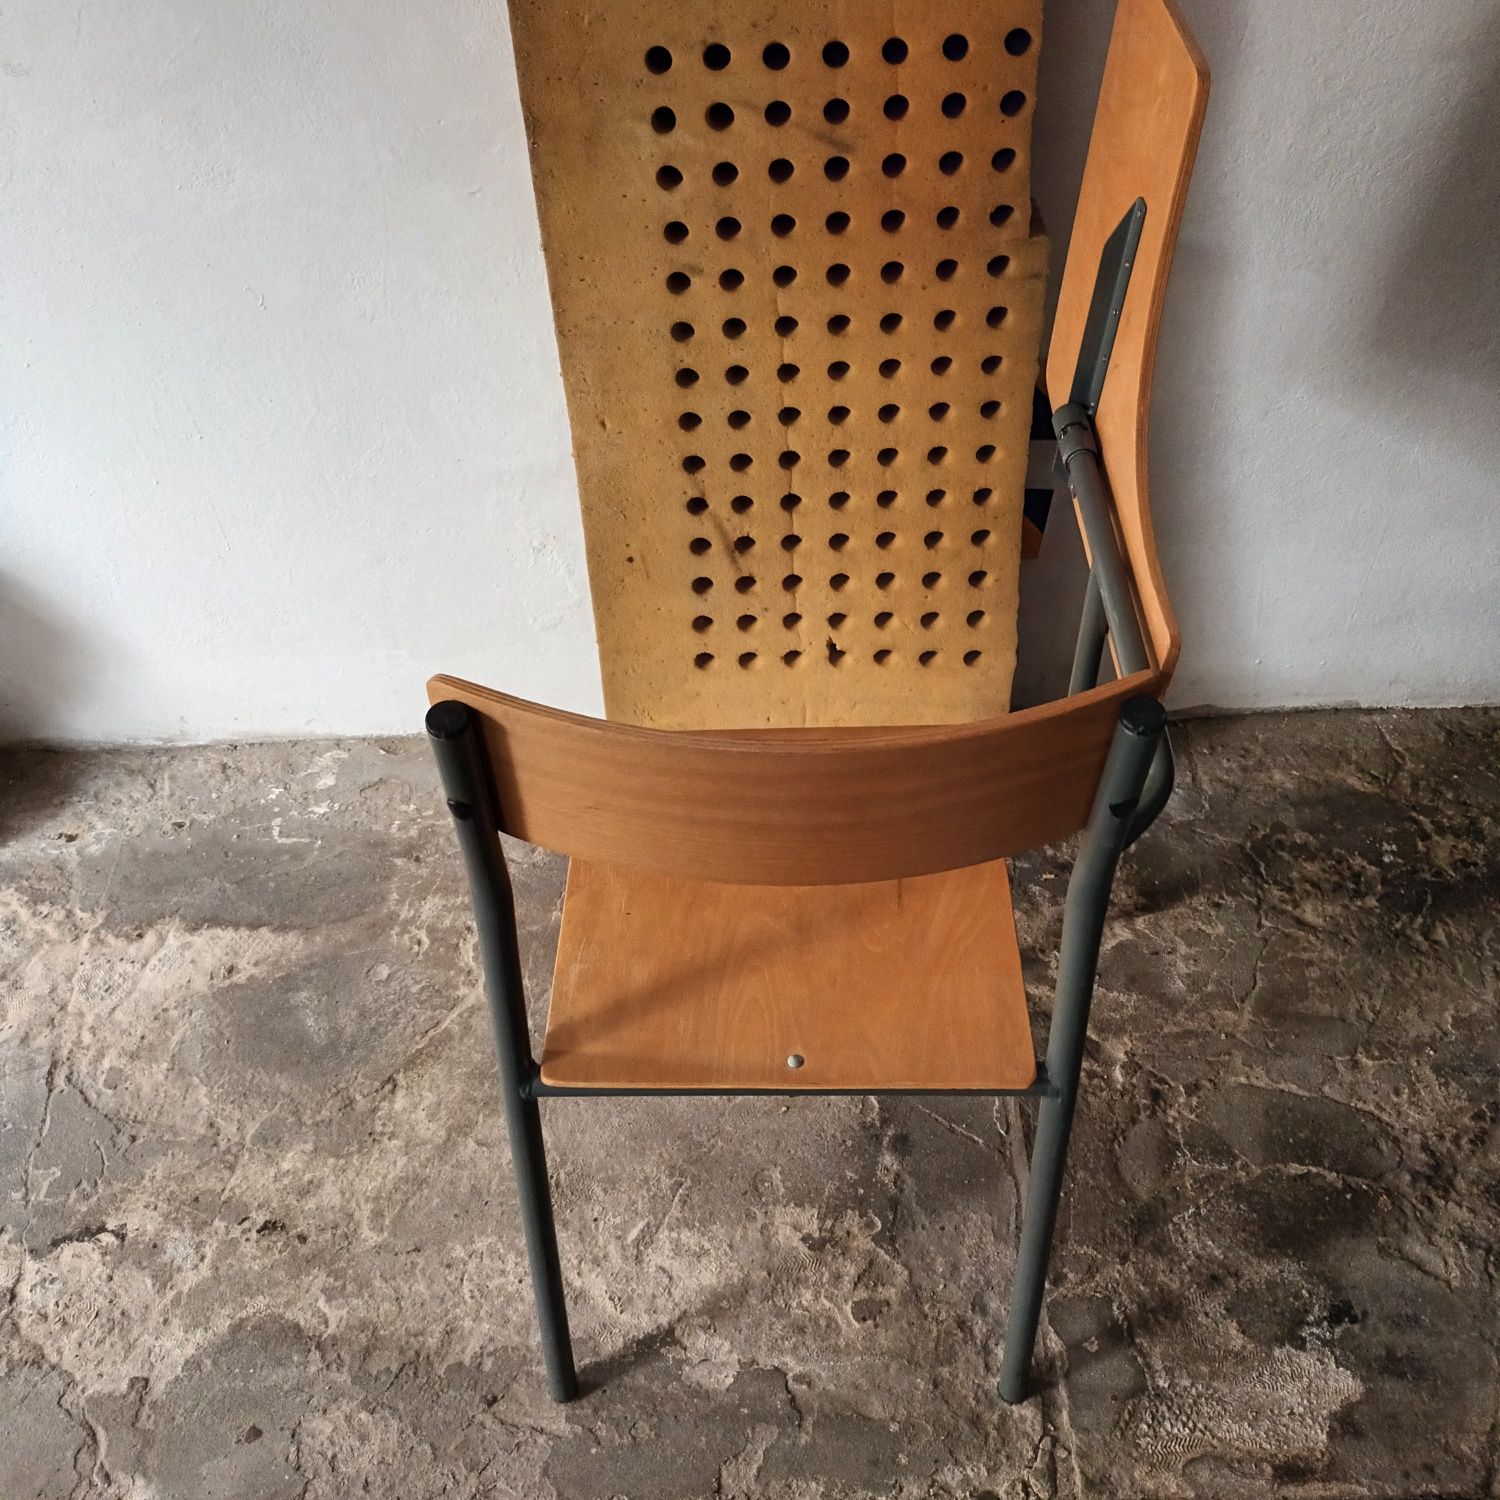 Krzesła szkolne z pulpitem stolikiem